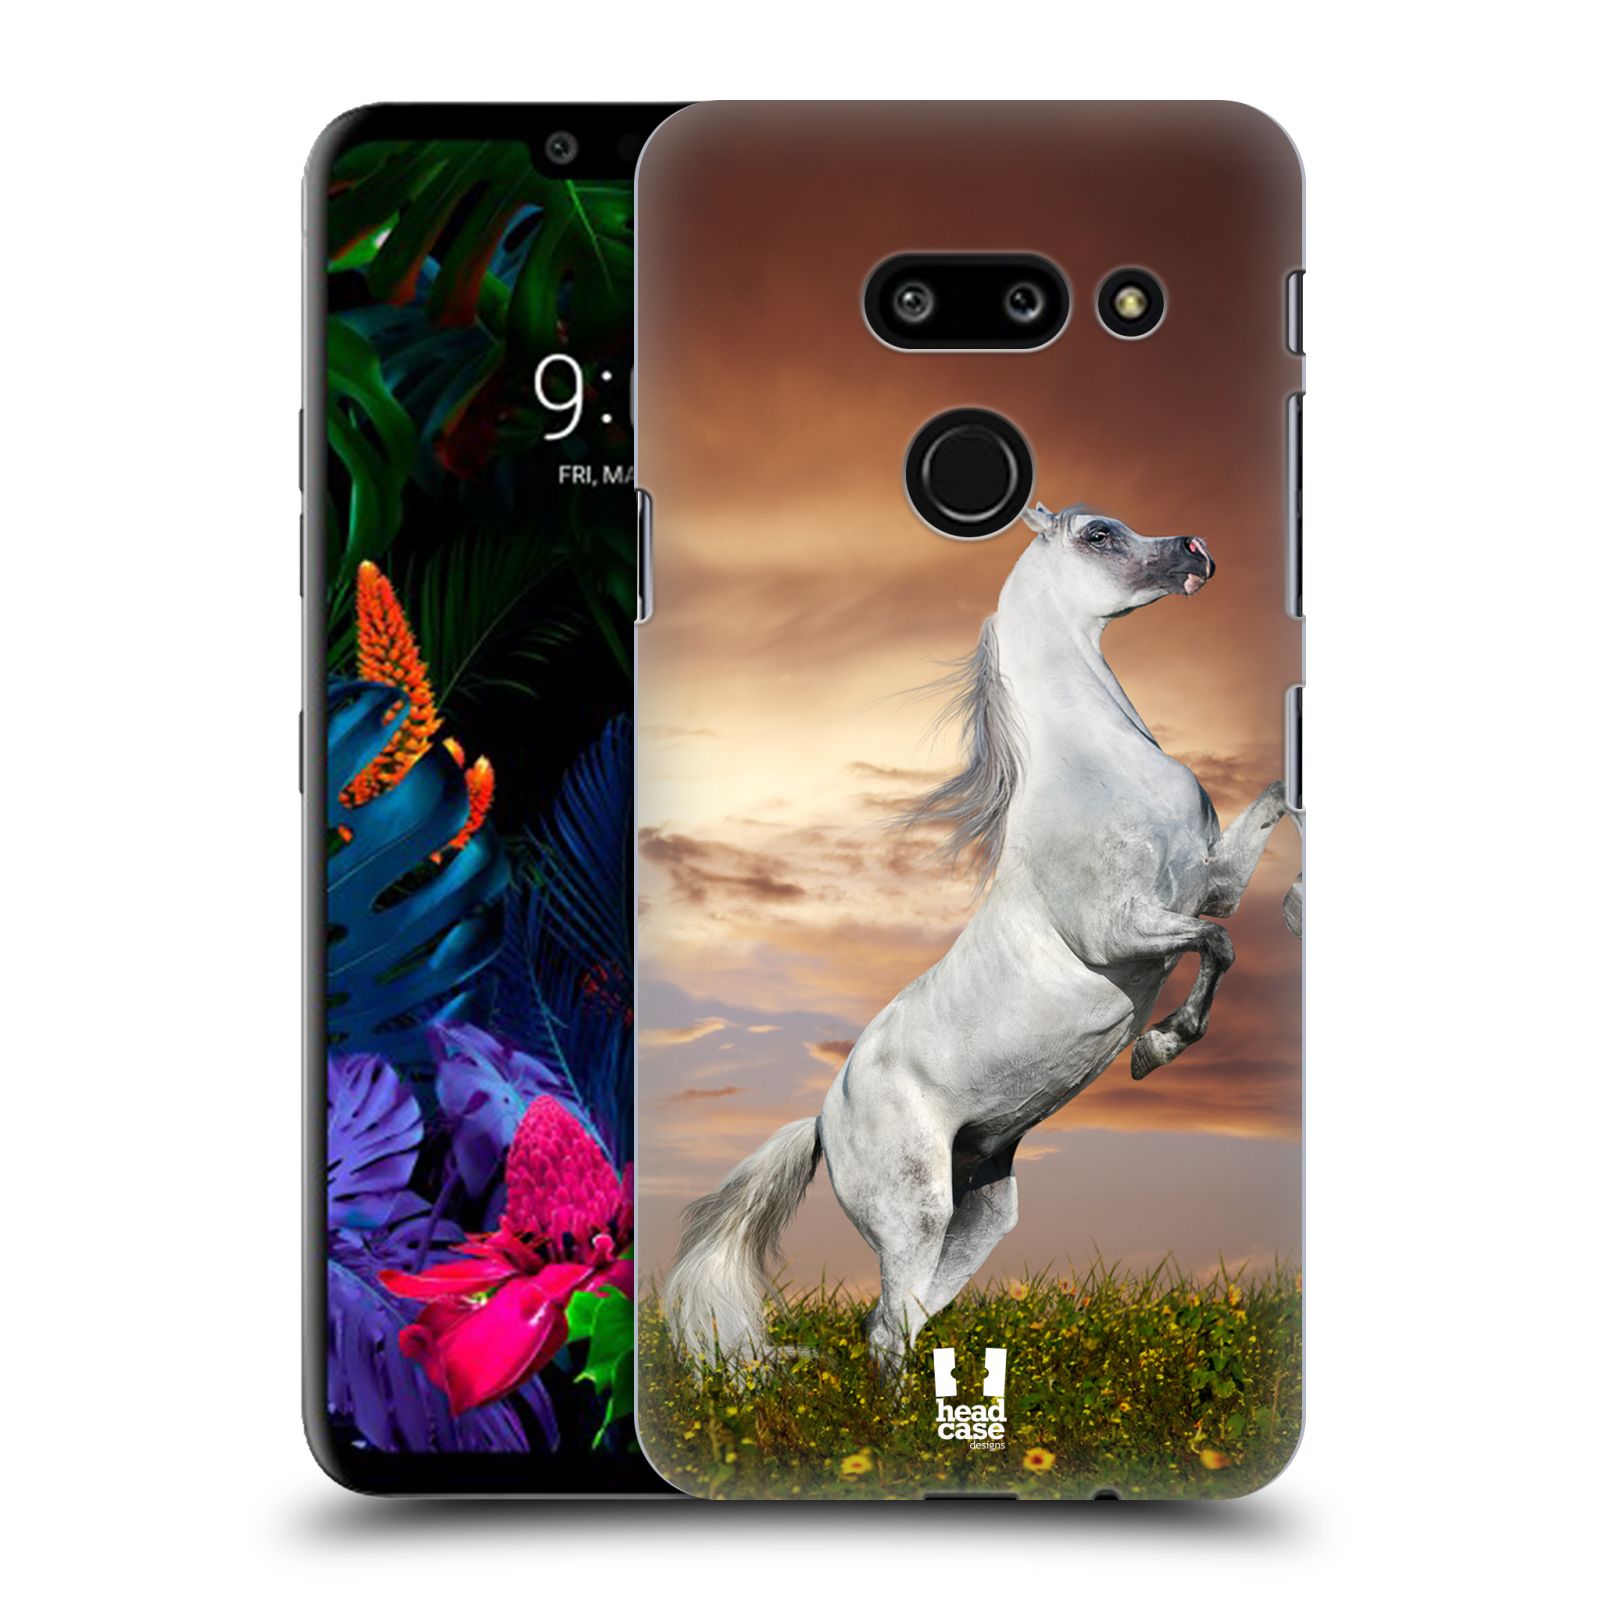 Zadní obal pro mobil LG G8 ThinQ - HEAD CASE - Svět zvířat divoký kůň